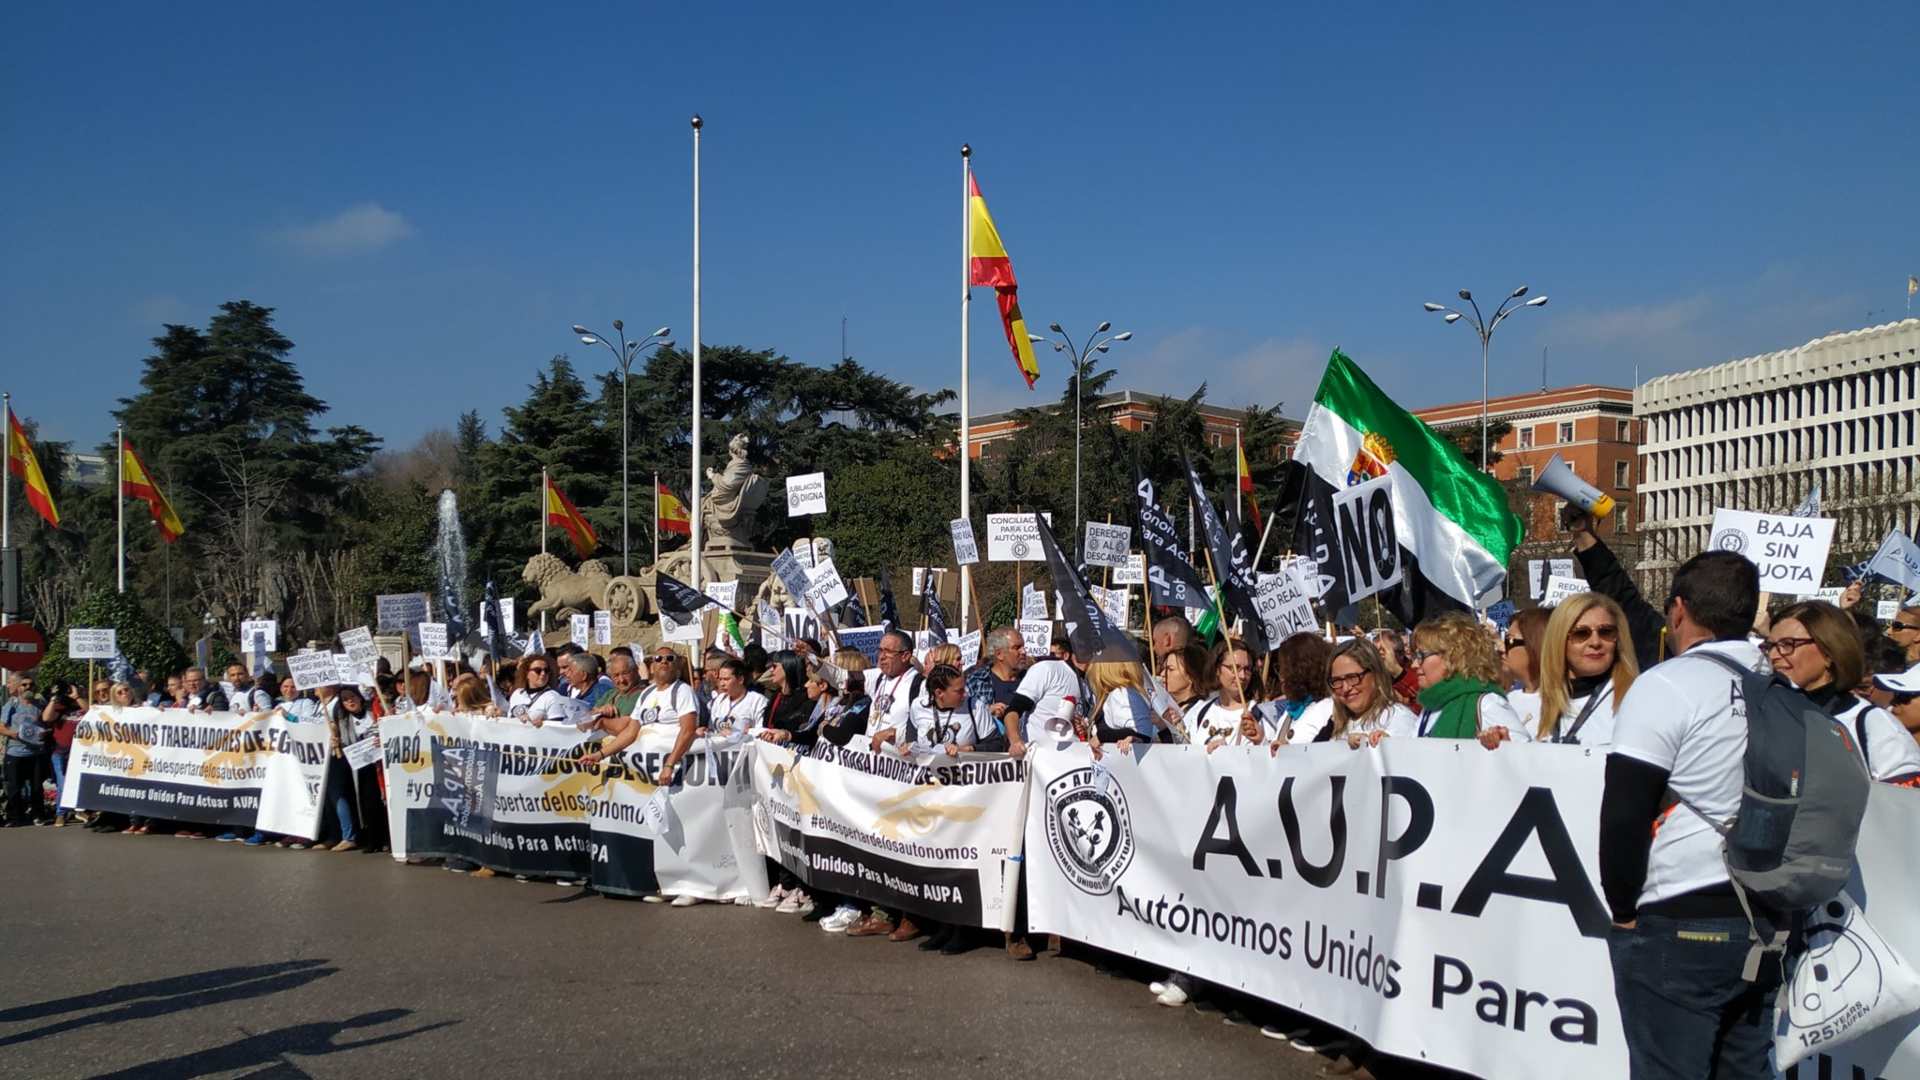 Miles de autónomos se manifiestan en Madrid para exigir las mismas prestaciones que los asalariados